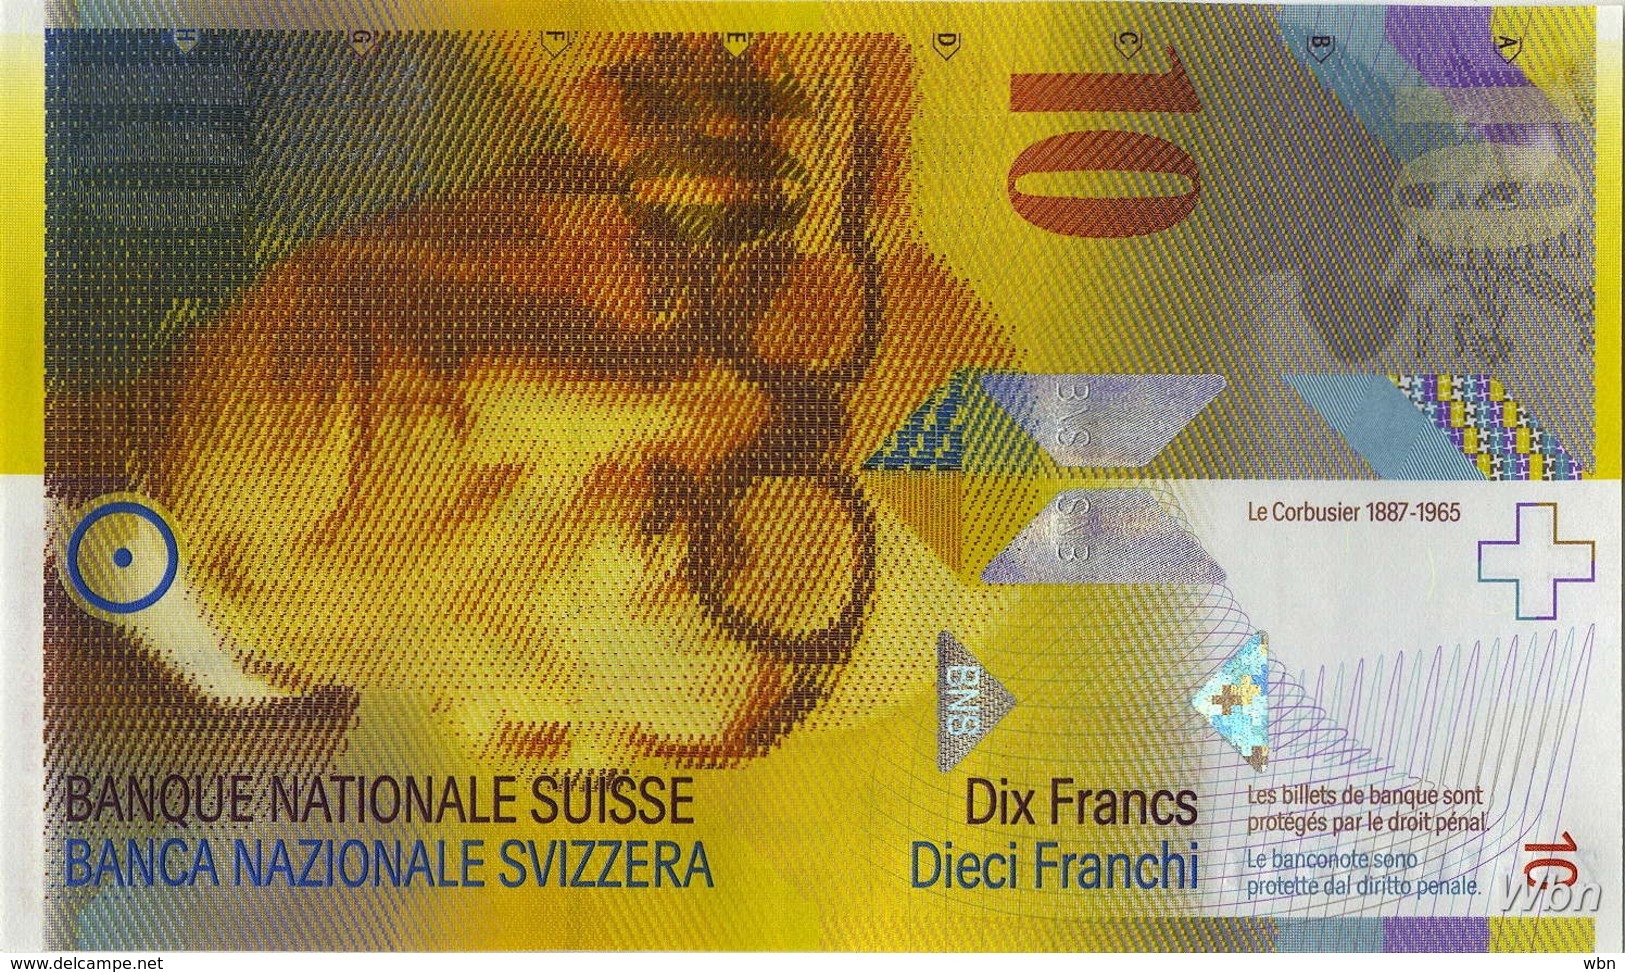 Suisse 10 Francs (P67e) 2013 (Pref: A) -UNC- - Switzerland